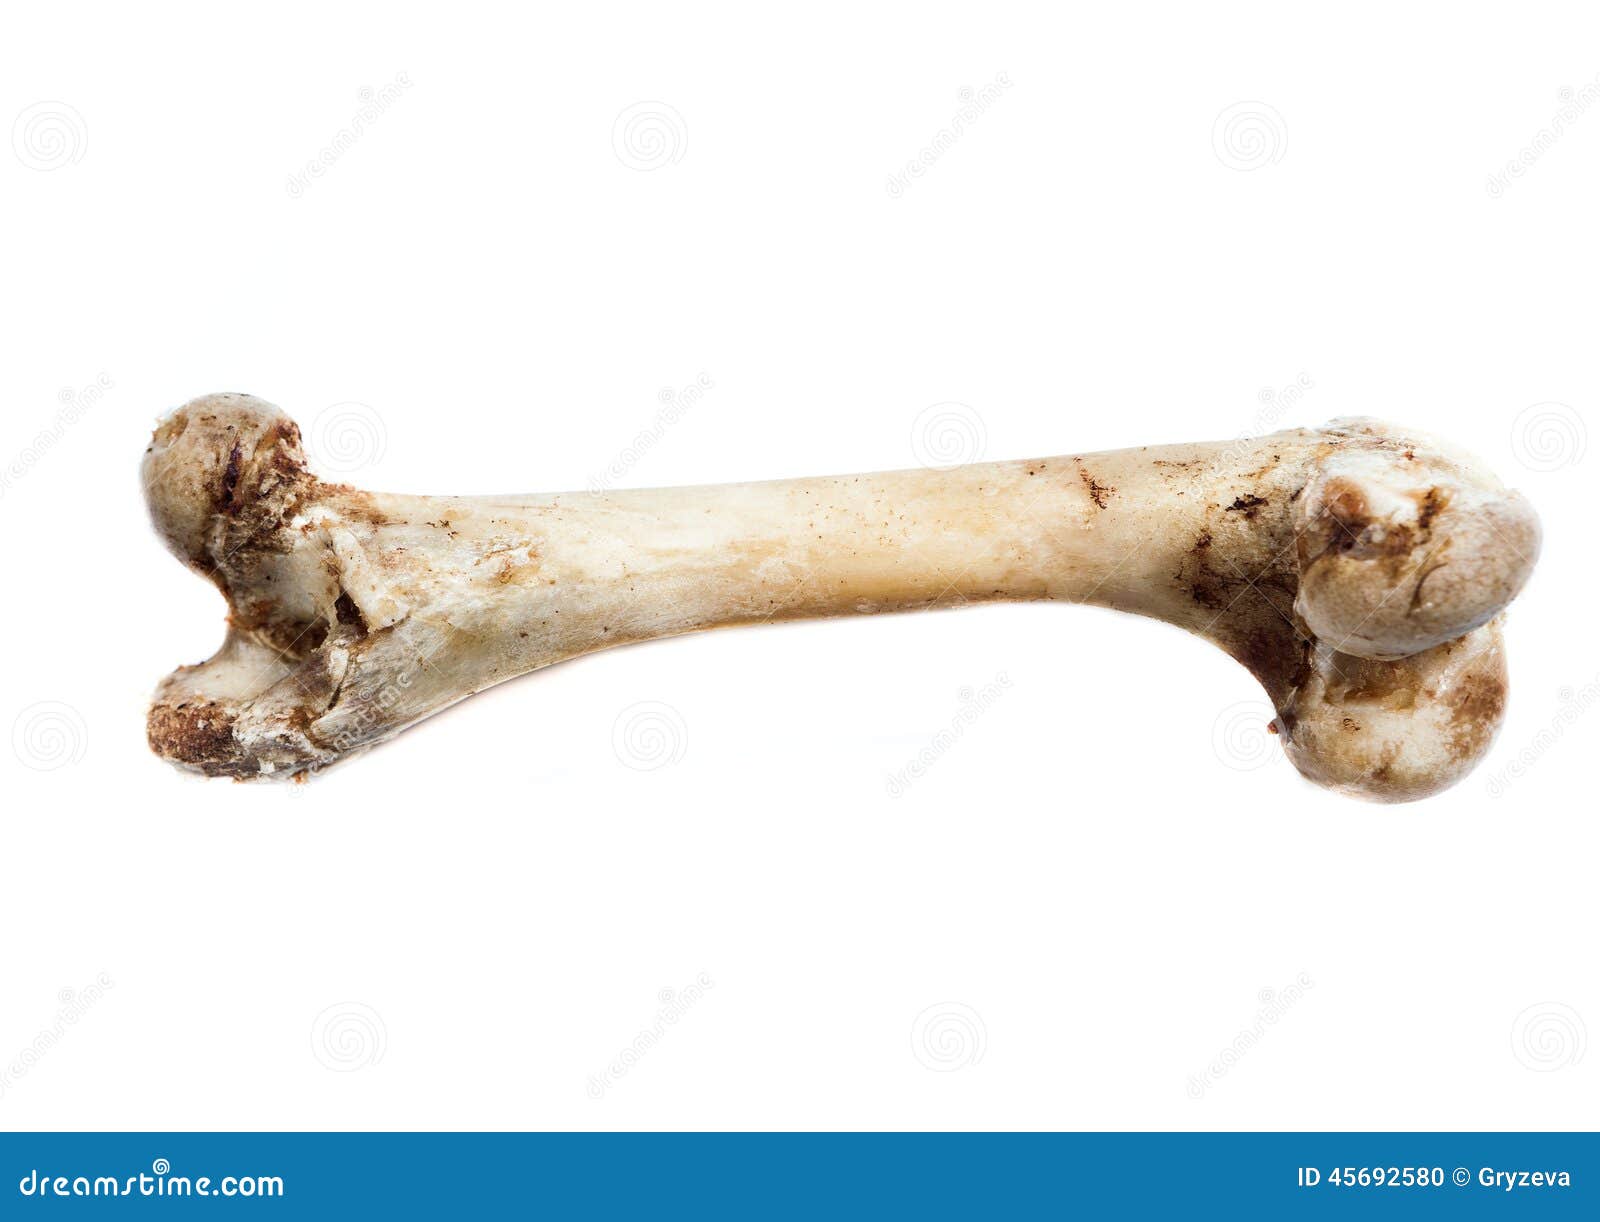 Elder bone. Обглоданные человеческие кости.